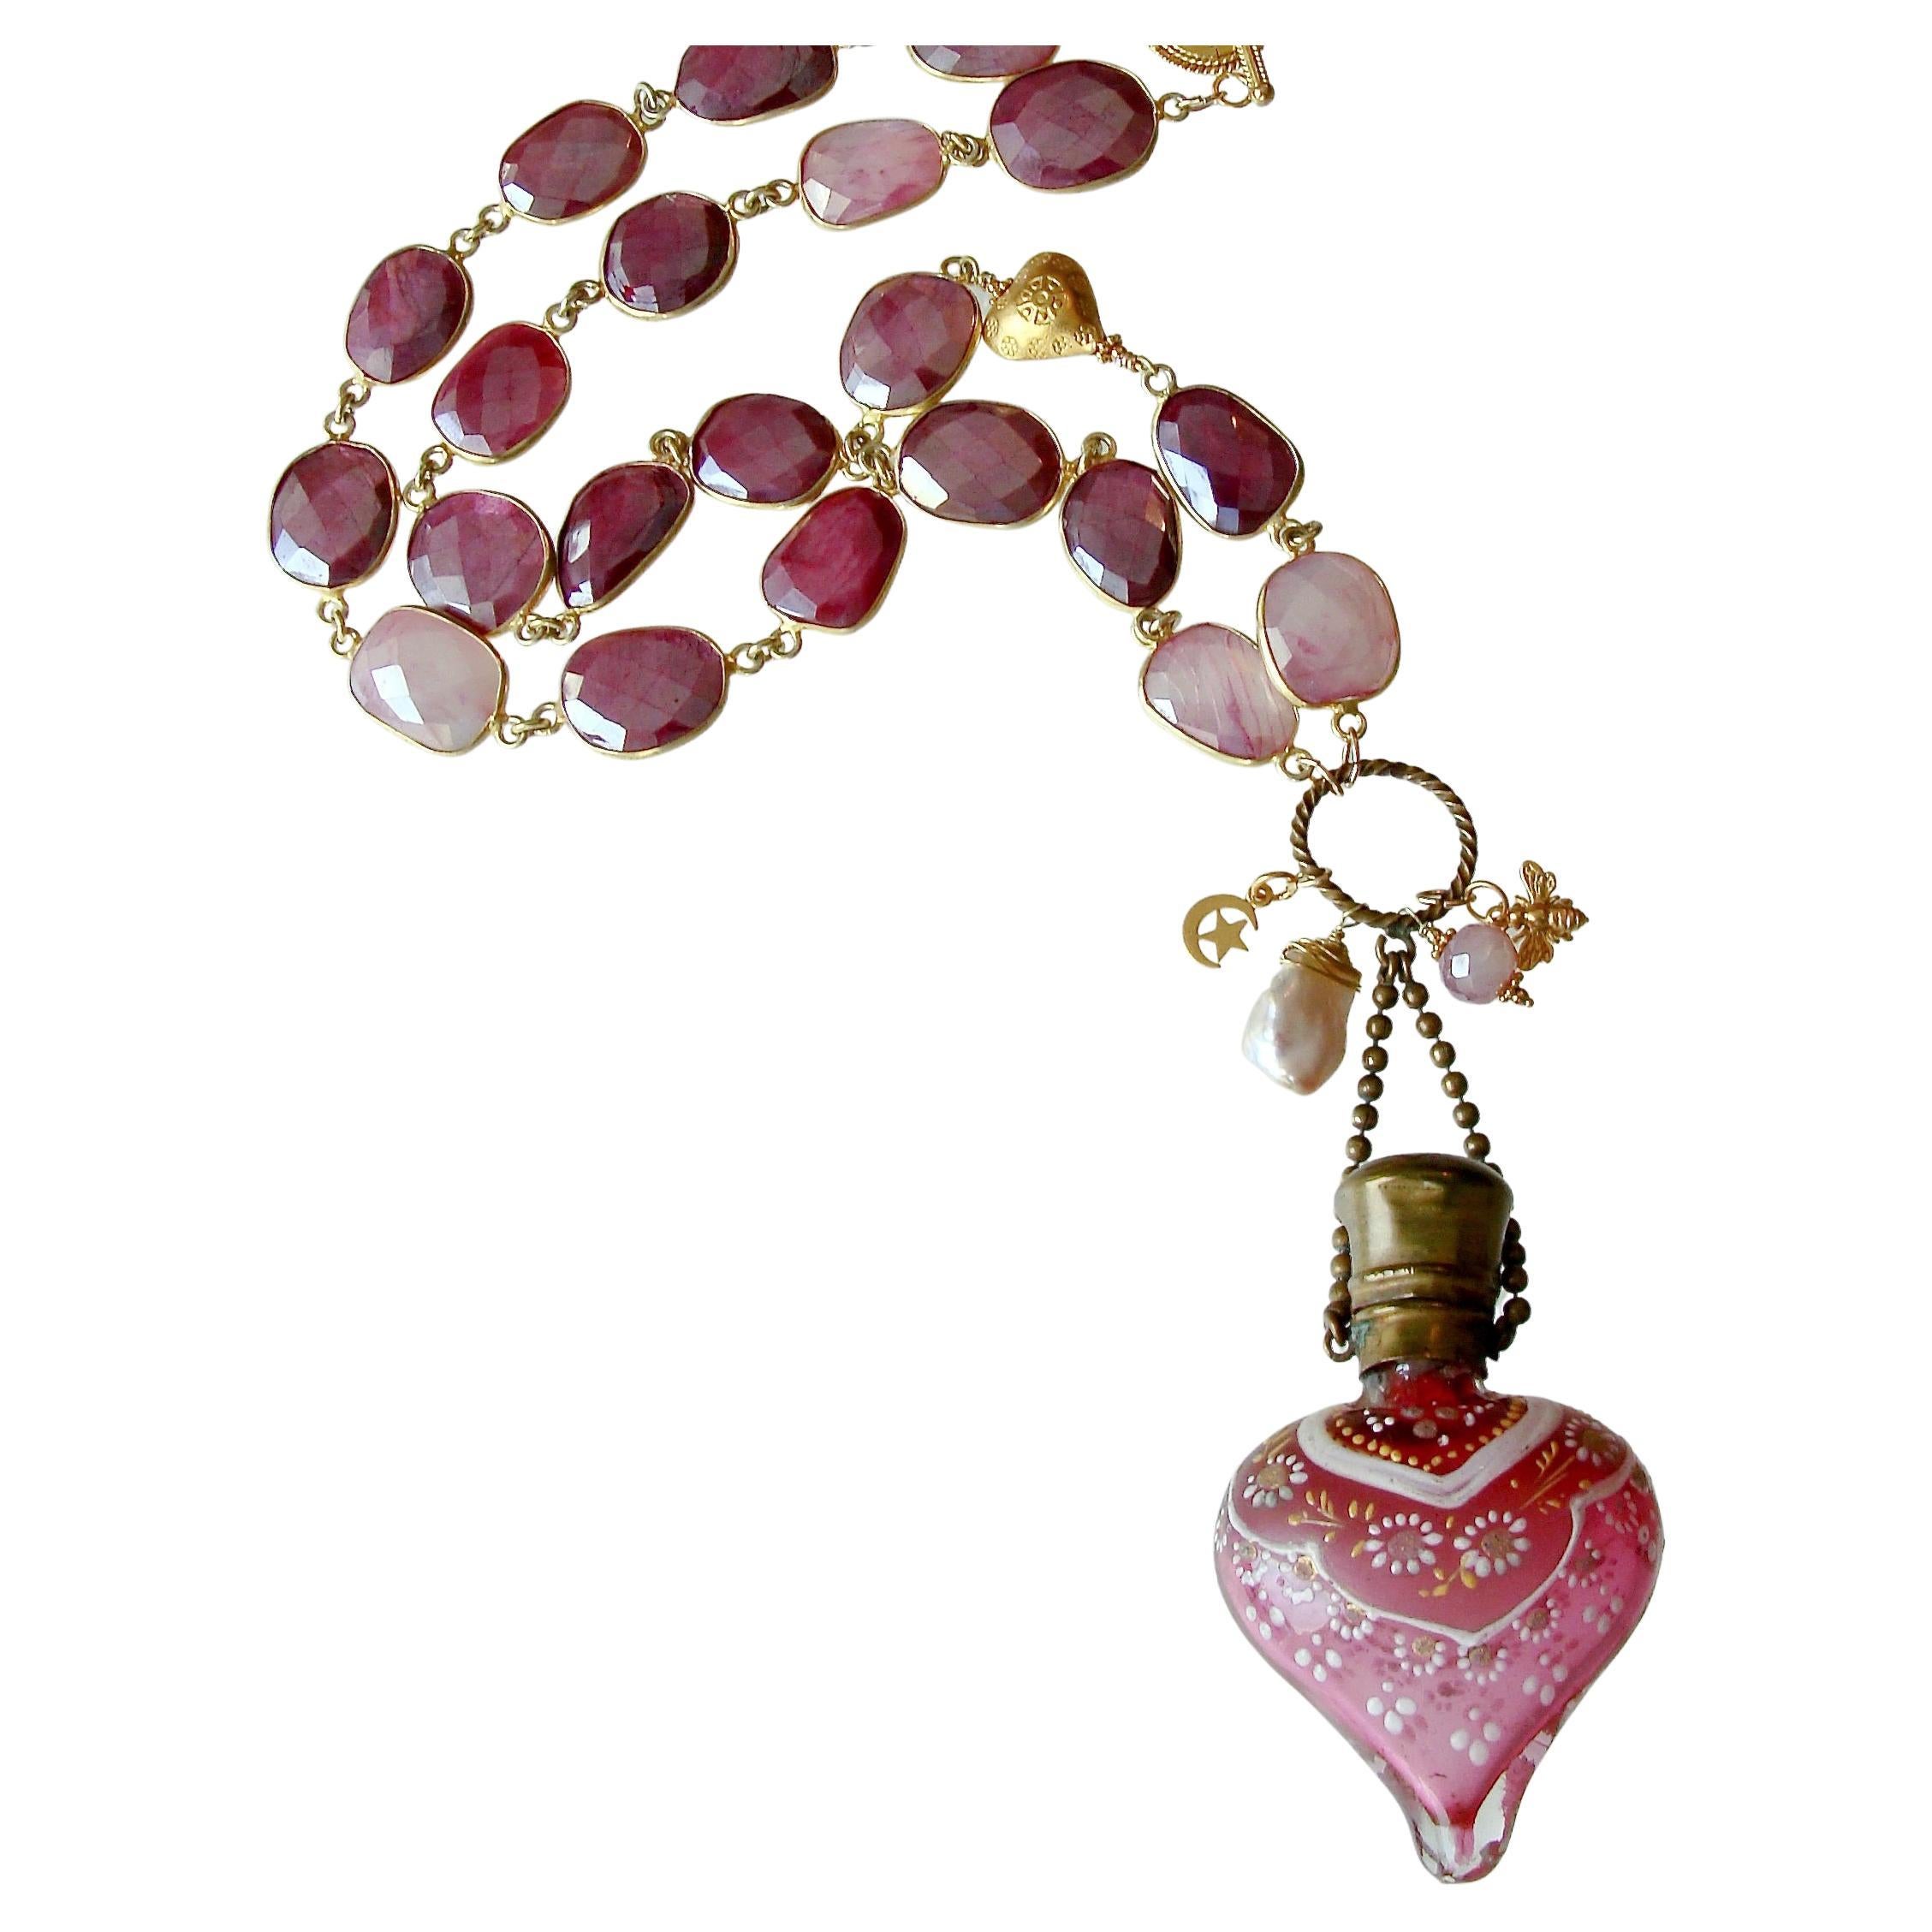 Karen Sugarman Designs Beaded Necklaces